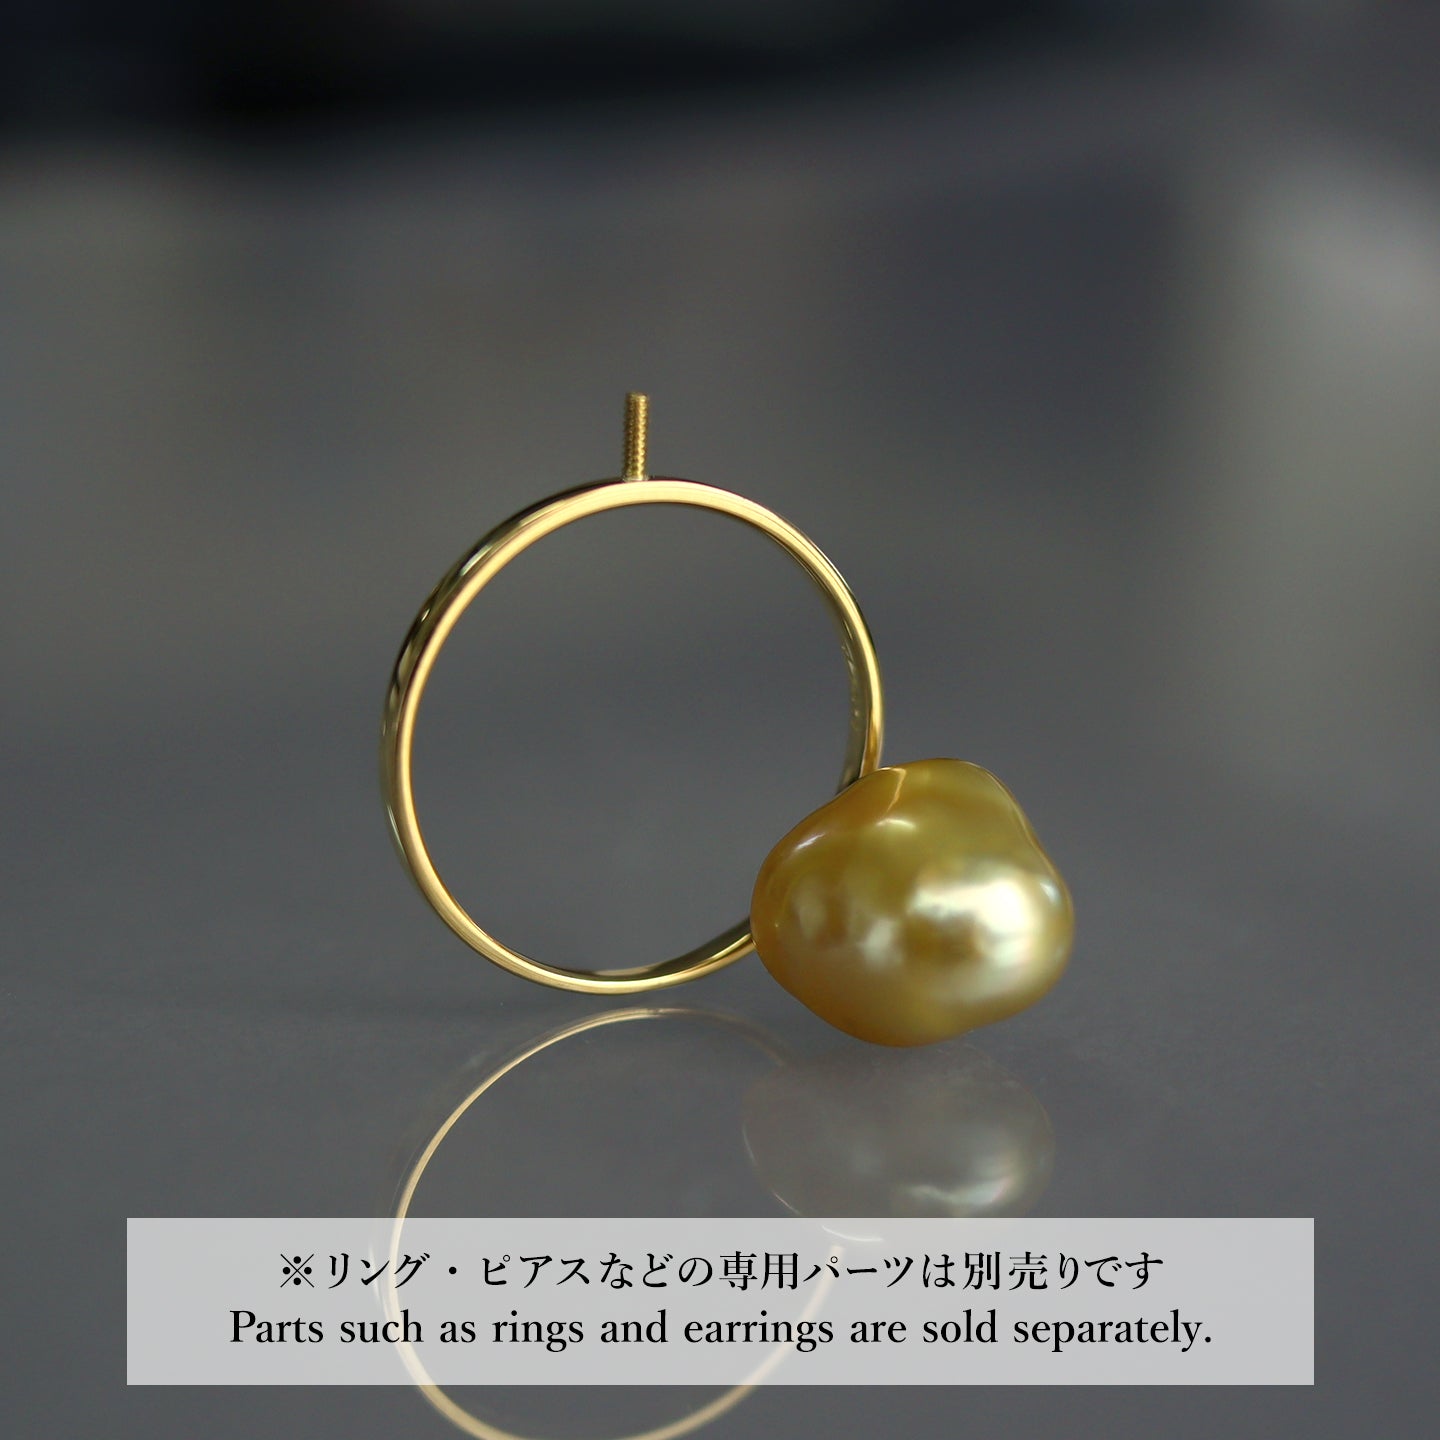 【COLLECTIBLE】Golden South Sea Pearl (No. CG6108)